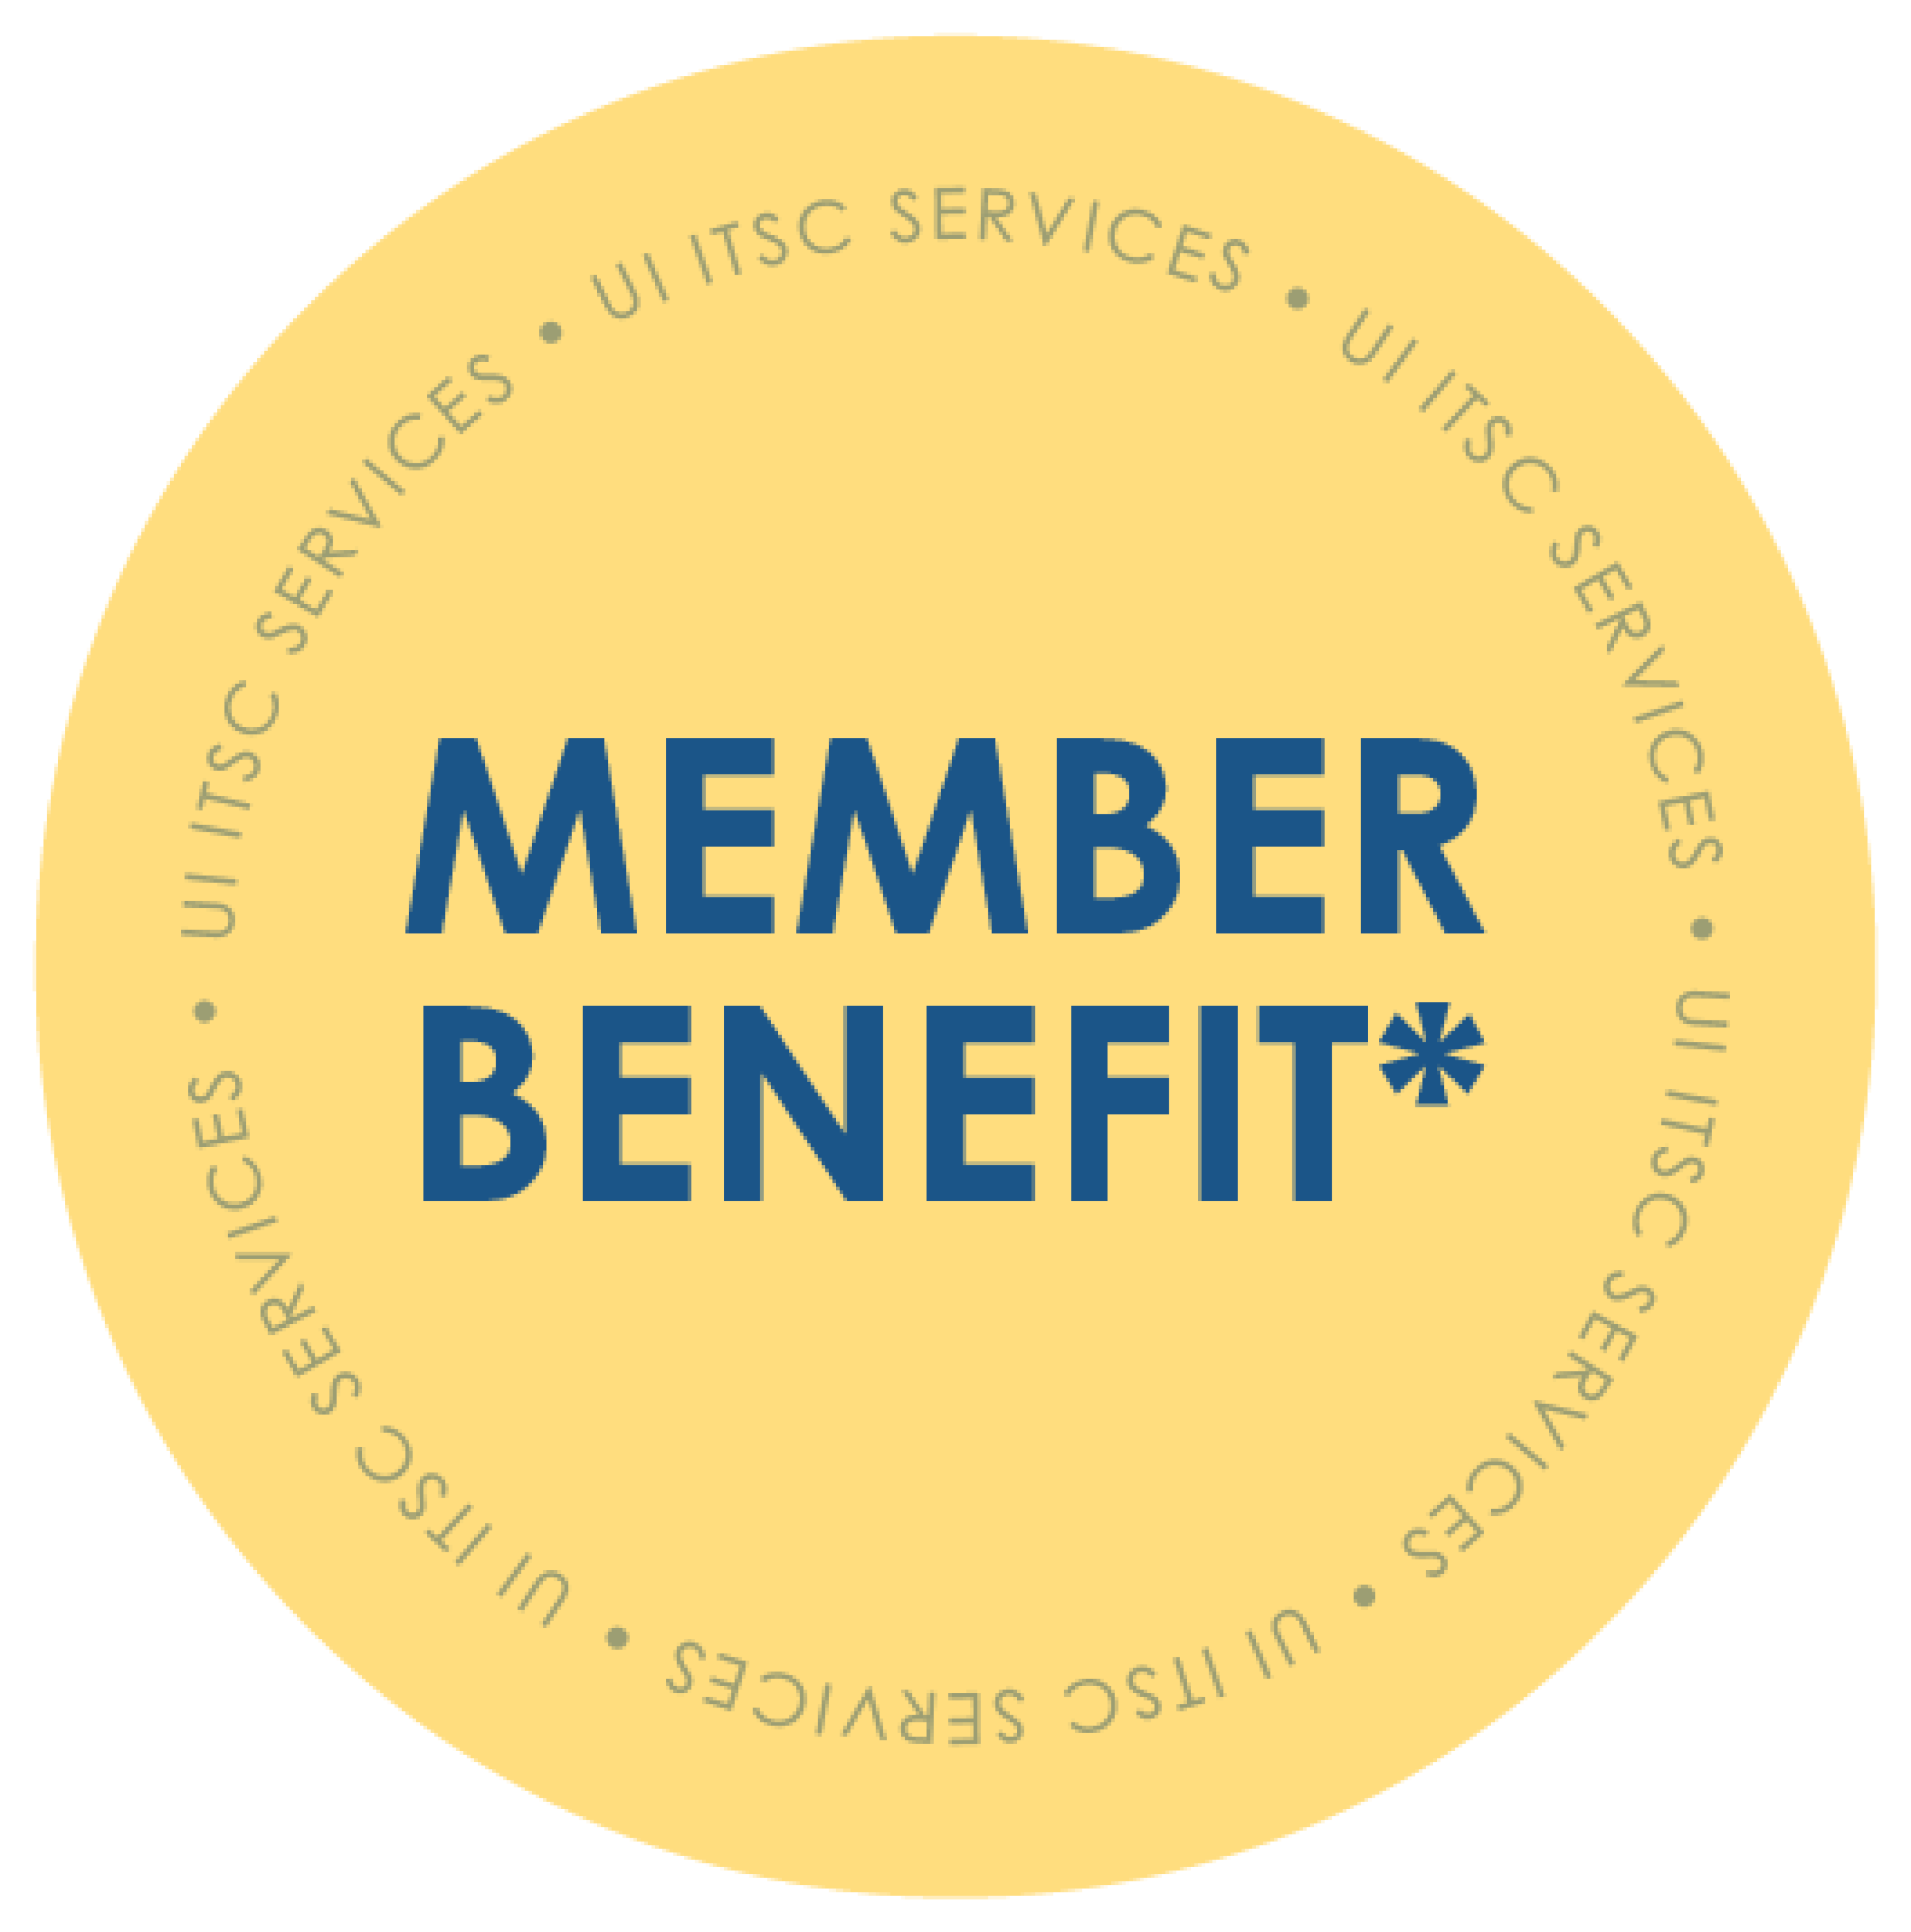 Member Benefit